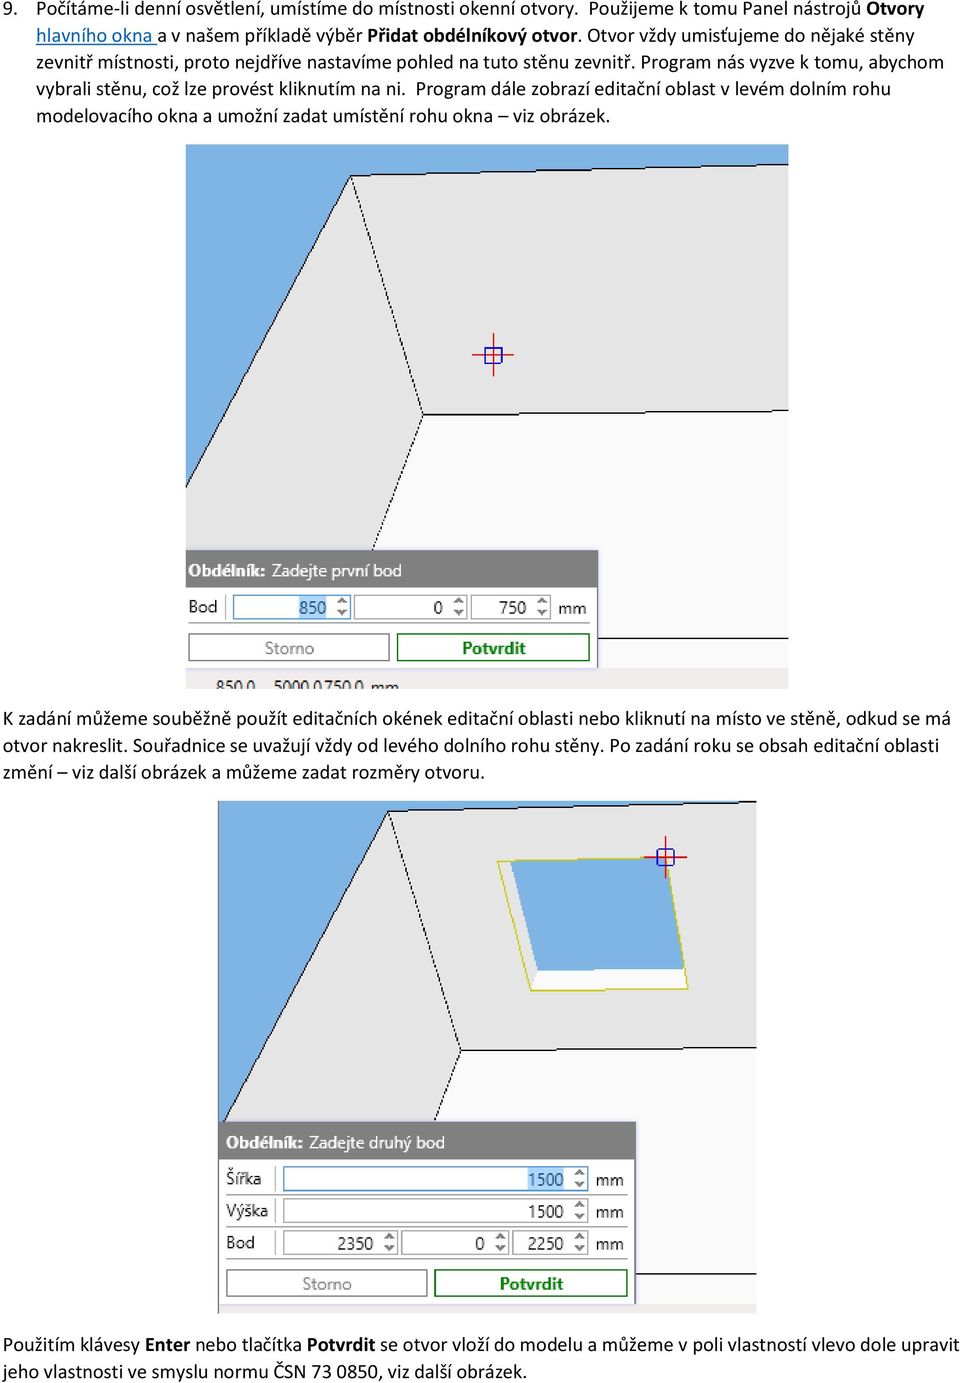 Program dále zobrazí editační oblast v levém dolním rohu modelovacího okna a umožní zadat umístění rohu okna viz obrázek.